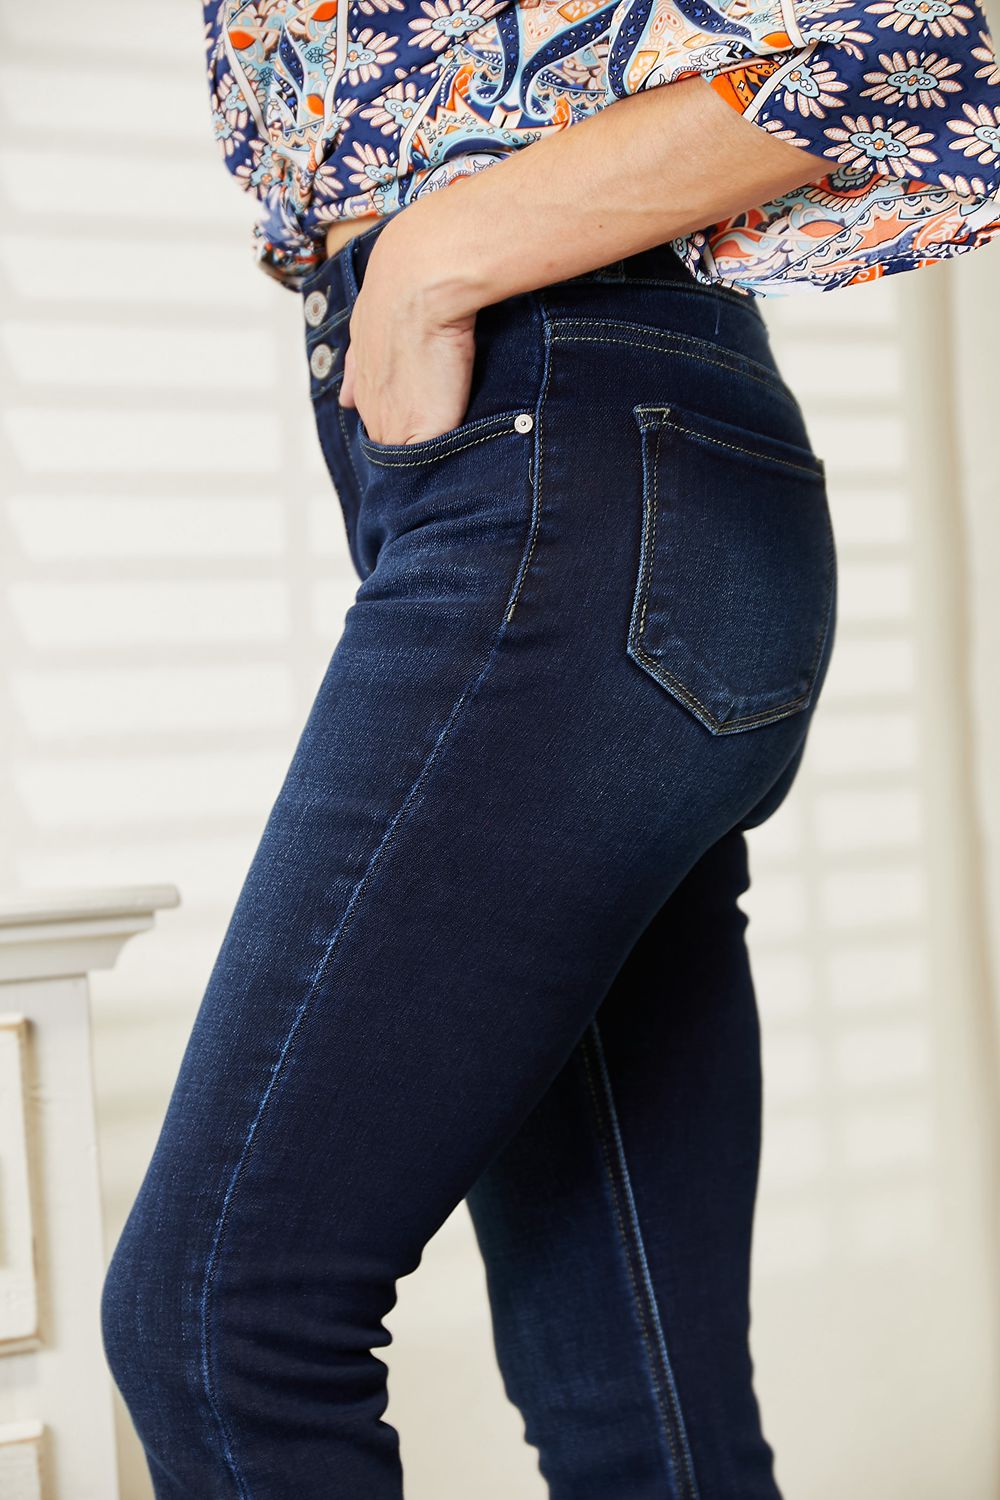 KanCan Super High Waist Jeans - Bootcut Jeans For Women